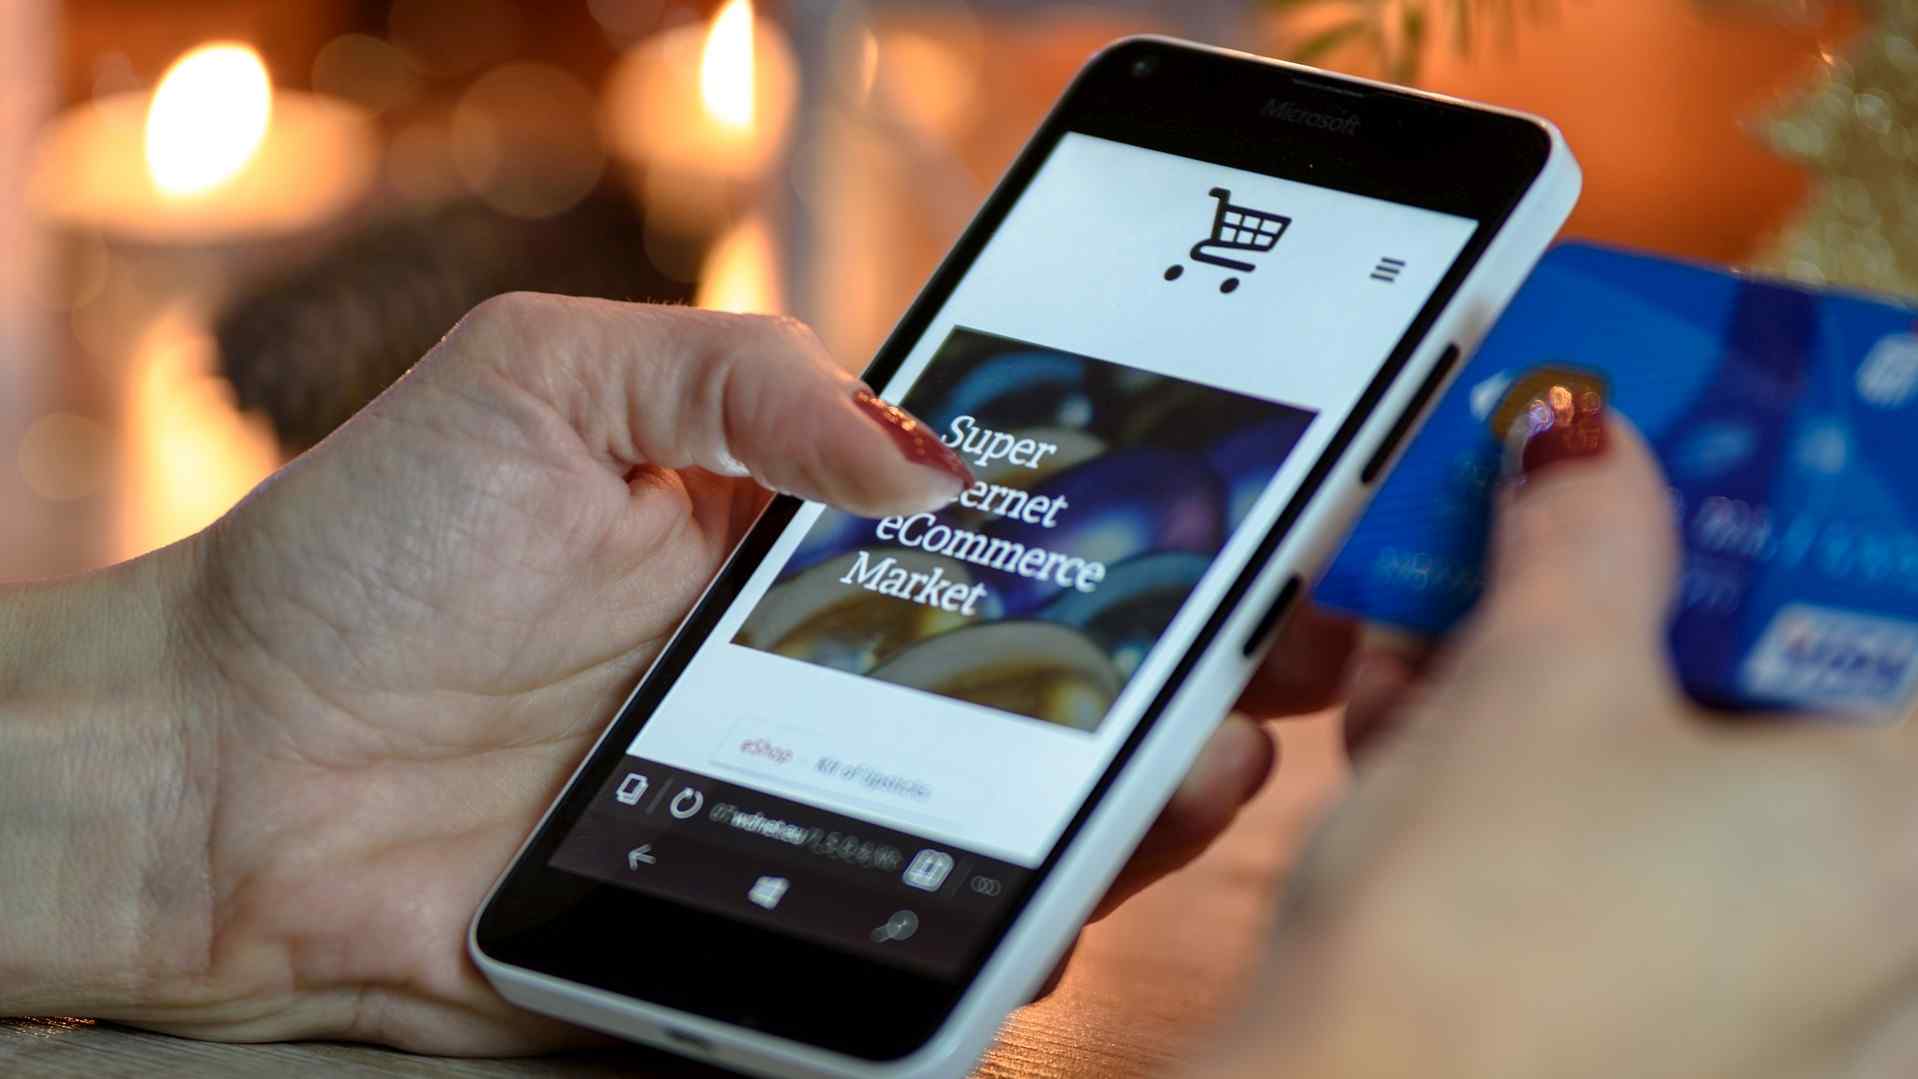 e-commerce, a nova tendência nas vendas